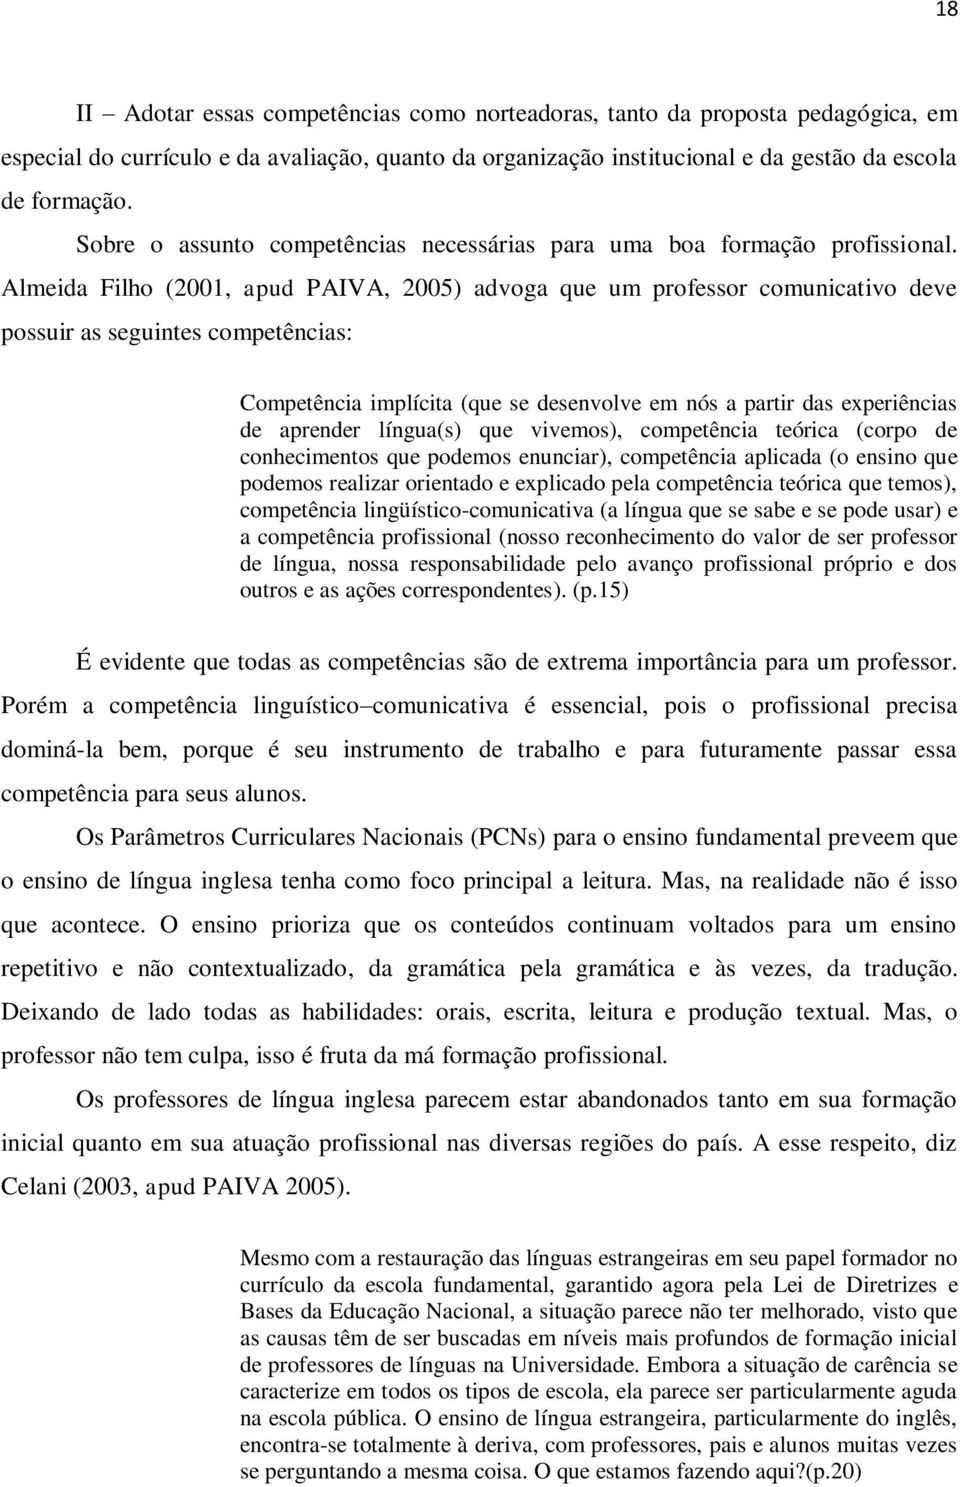 Almeida Filho (2001, apud PAIVA, 2005) advoga que um professor comunicativo deve possuir as seguintes competências: Competência implícita (que se desenvolve em nós a partir das experiências de